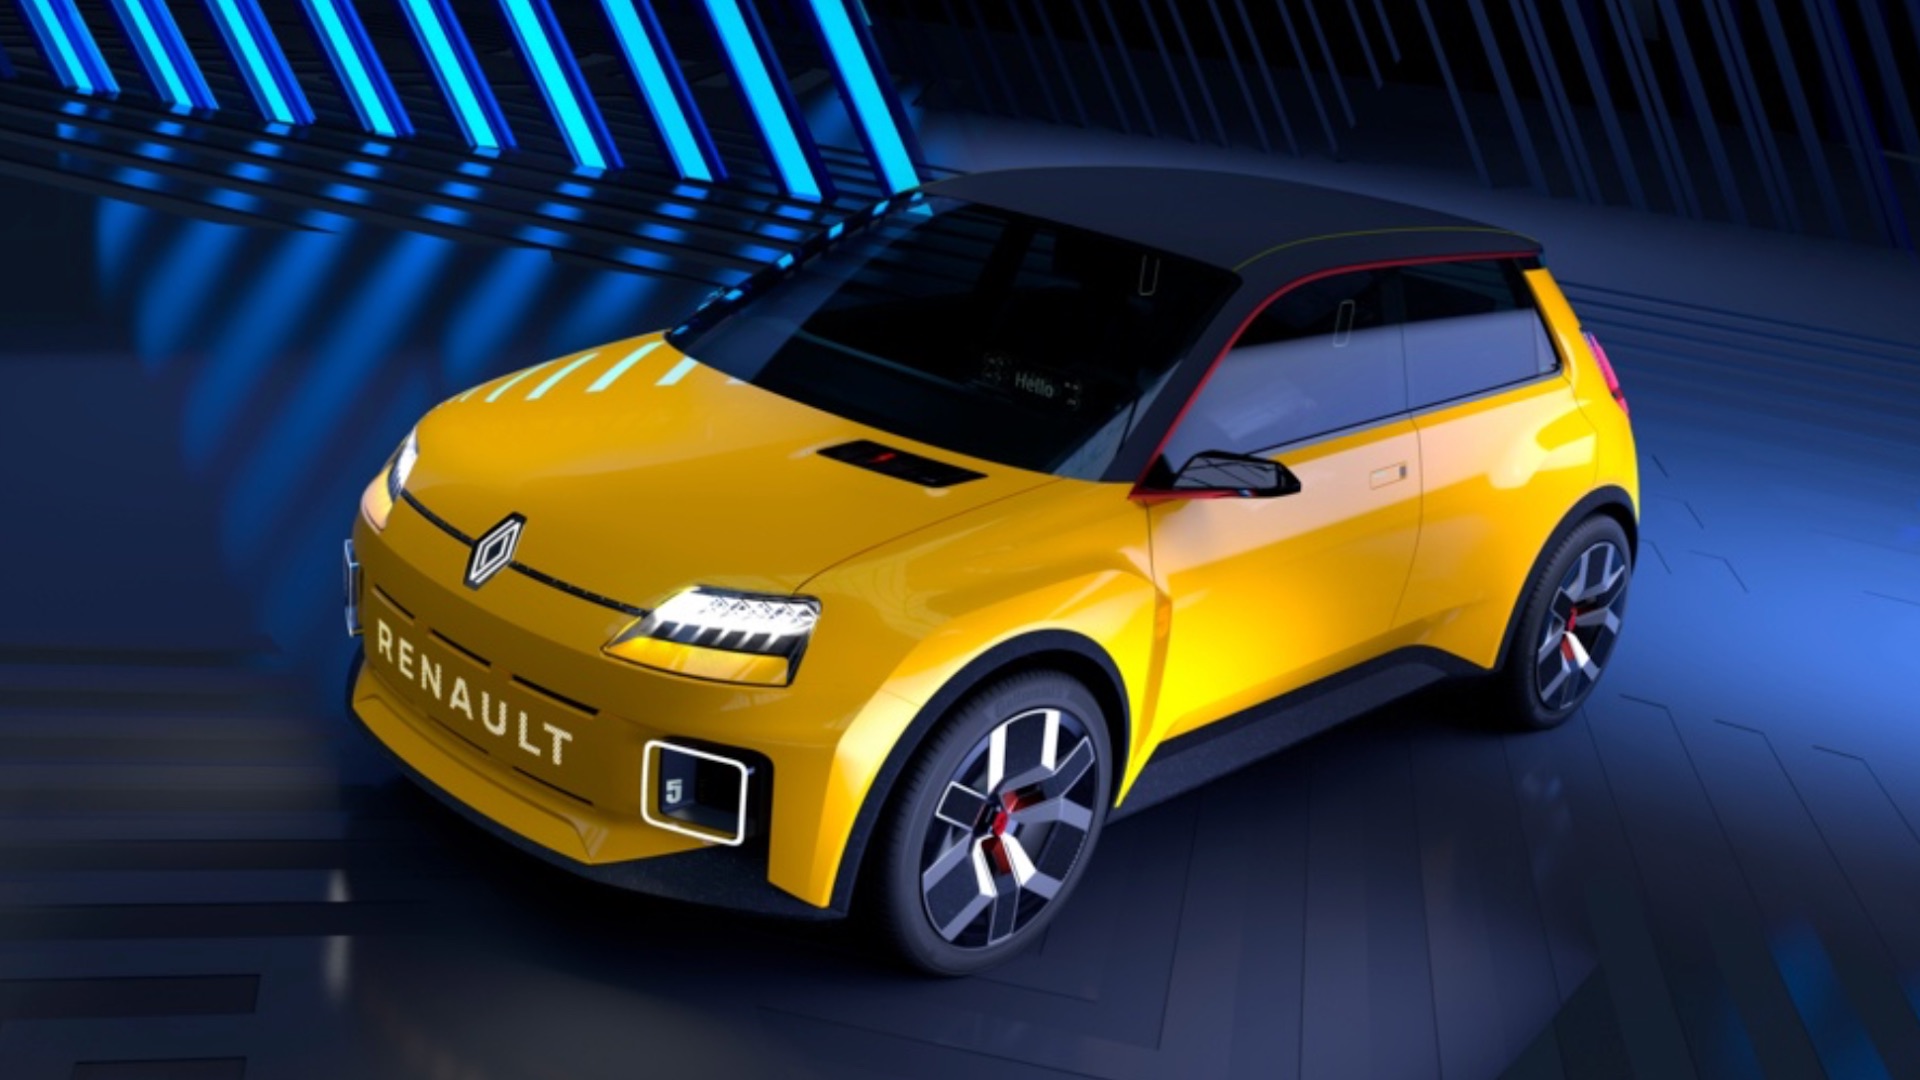 Renault remporte haut la main le prix du plus beau concept car de l’année